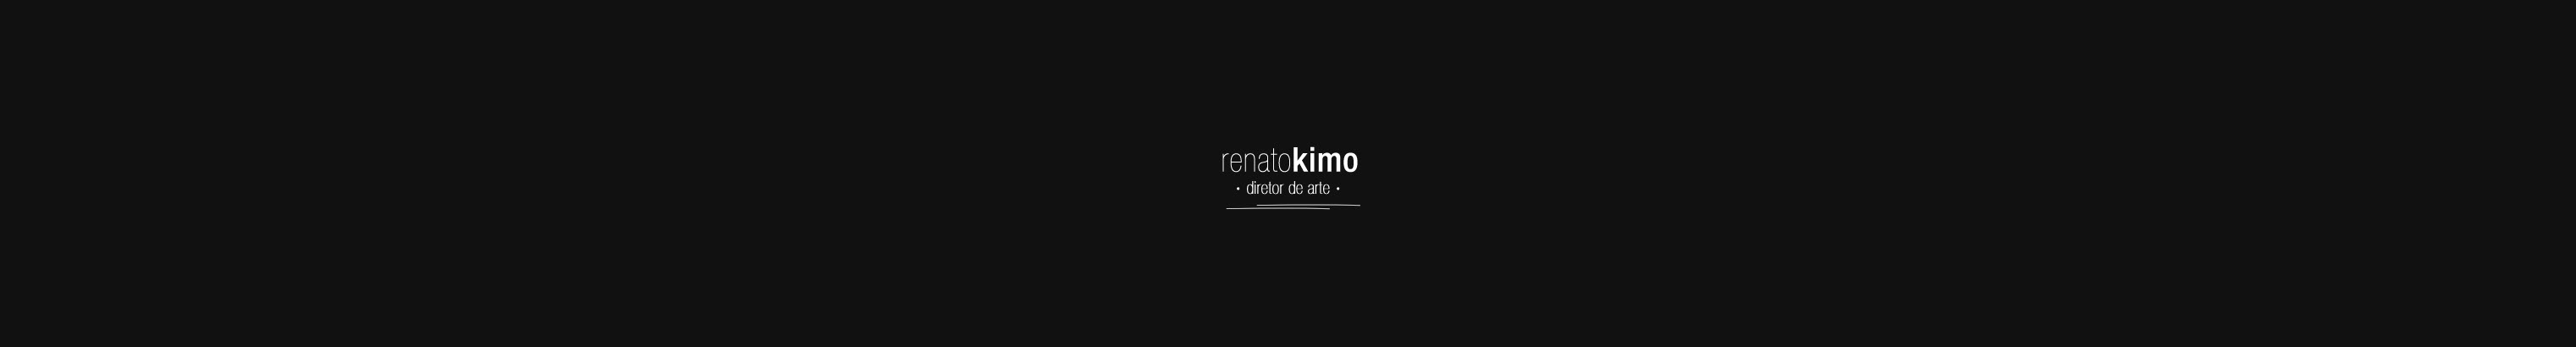 Profielbanner van Renato Kimo